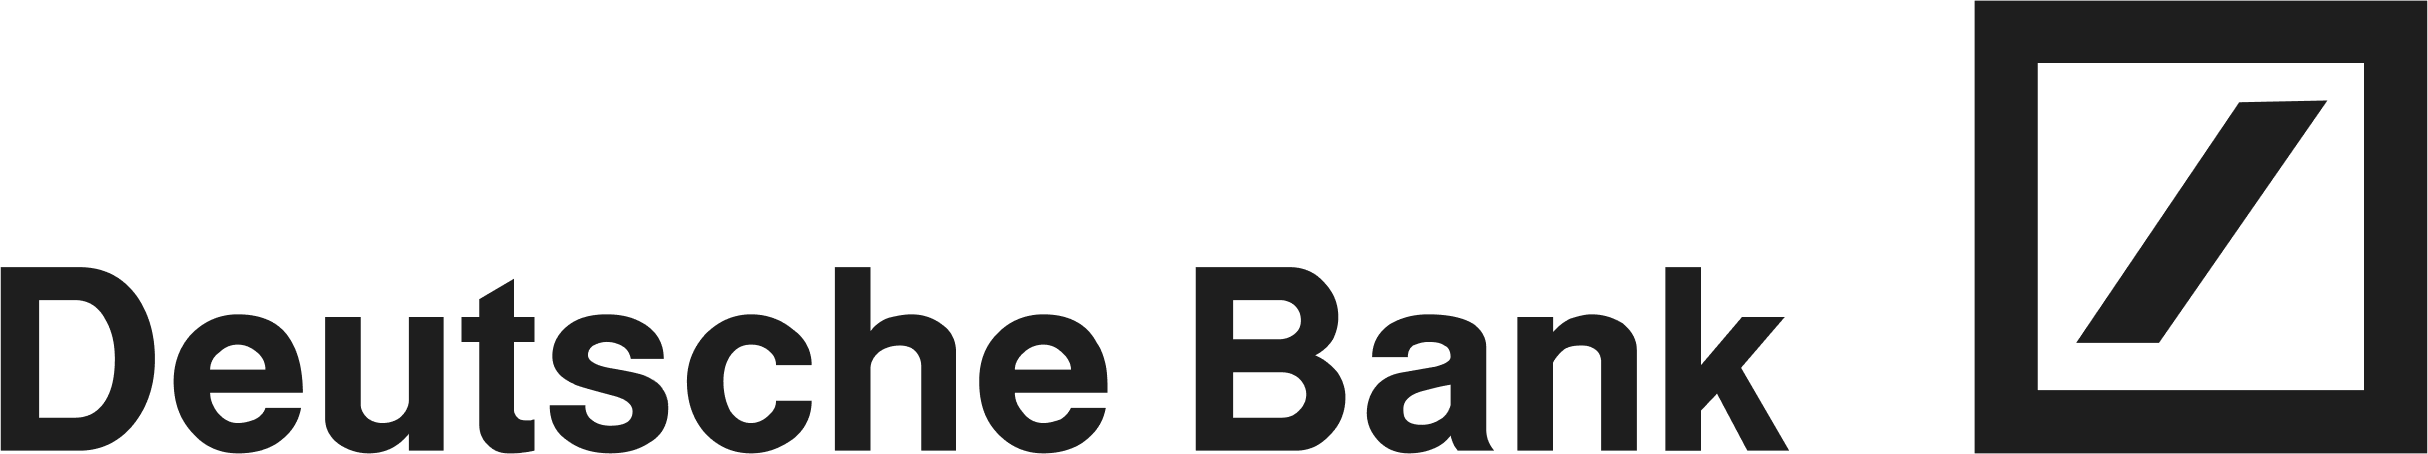 Deutsche Bank logo 